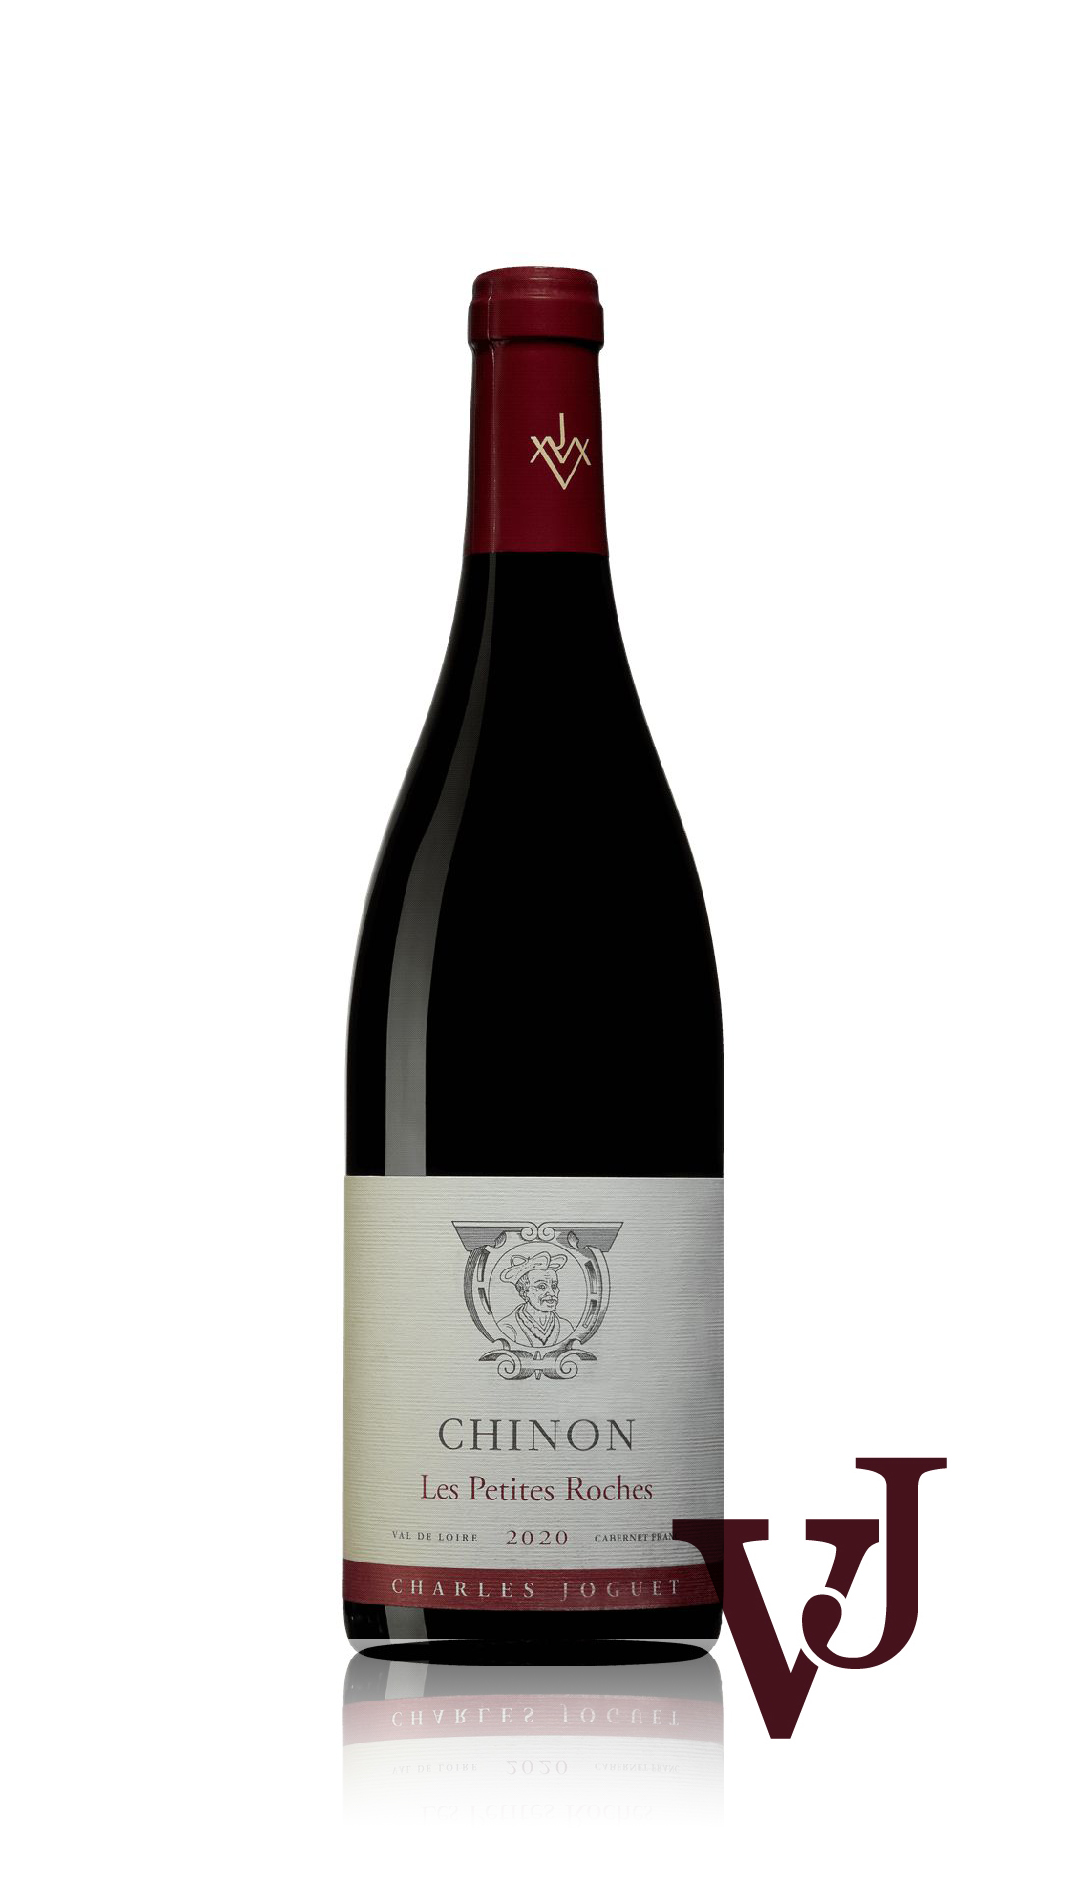 Rött Vin - Chinon Les Petites Roches Charles Joguet artikel nummer 9559301 från producenten Charles Joguet från området Frankrike